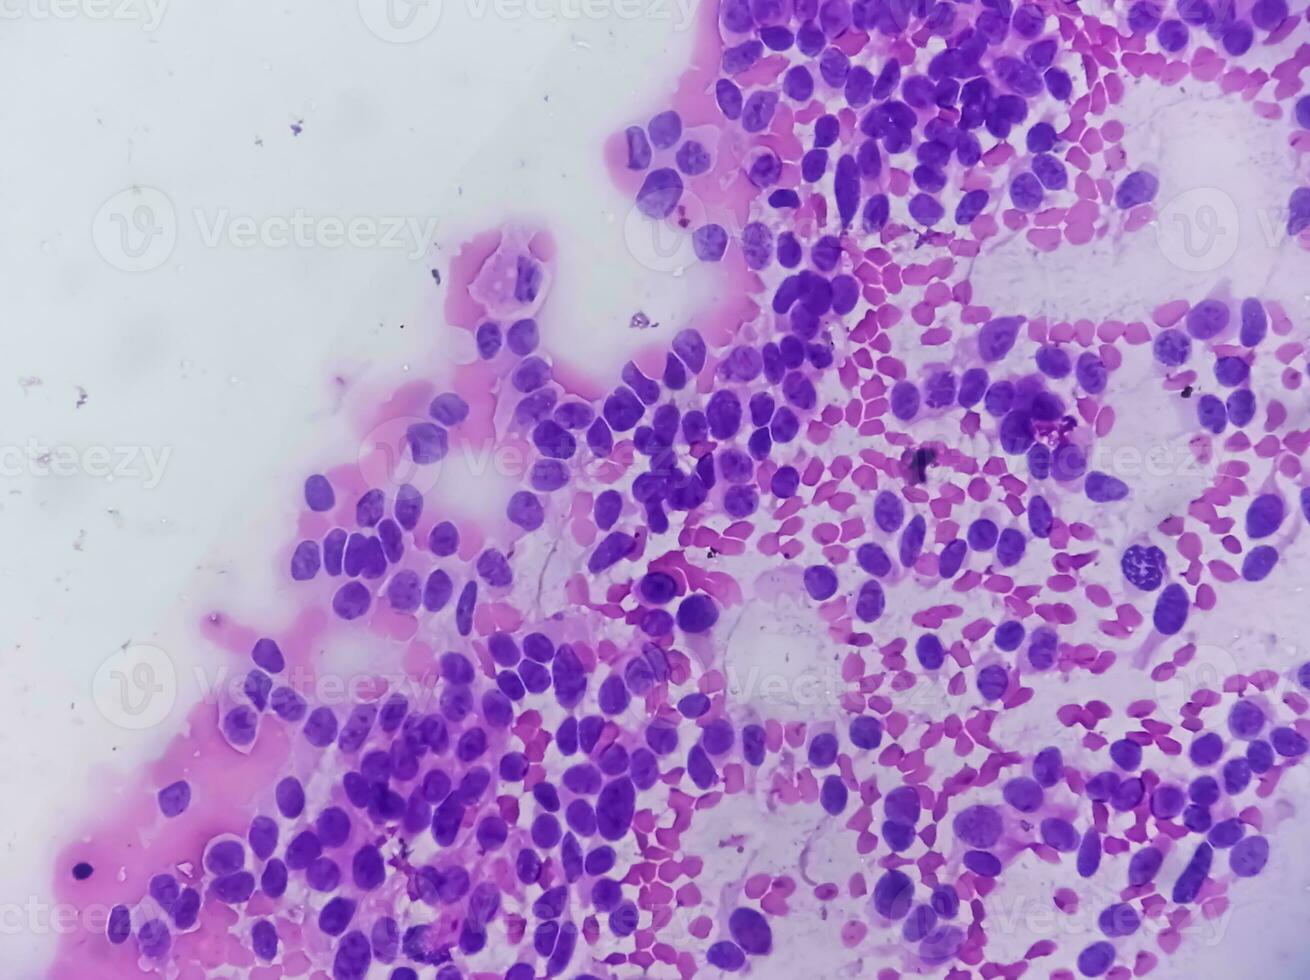 usg guidato fna citologia di fegato sol mostrando non Hodgkin linfoma. metastatico carcinoma foto